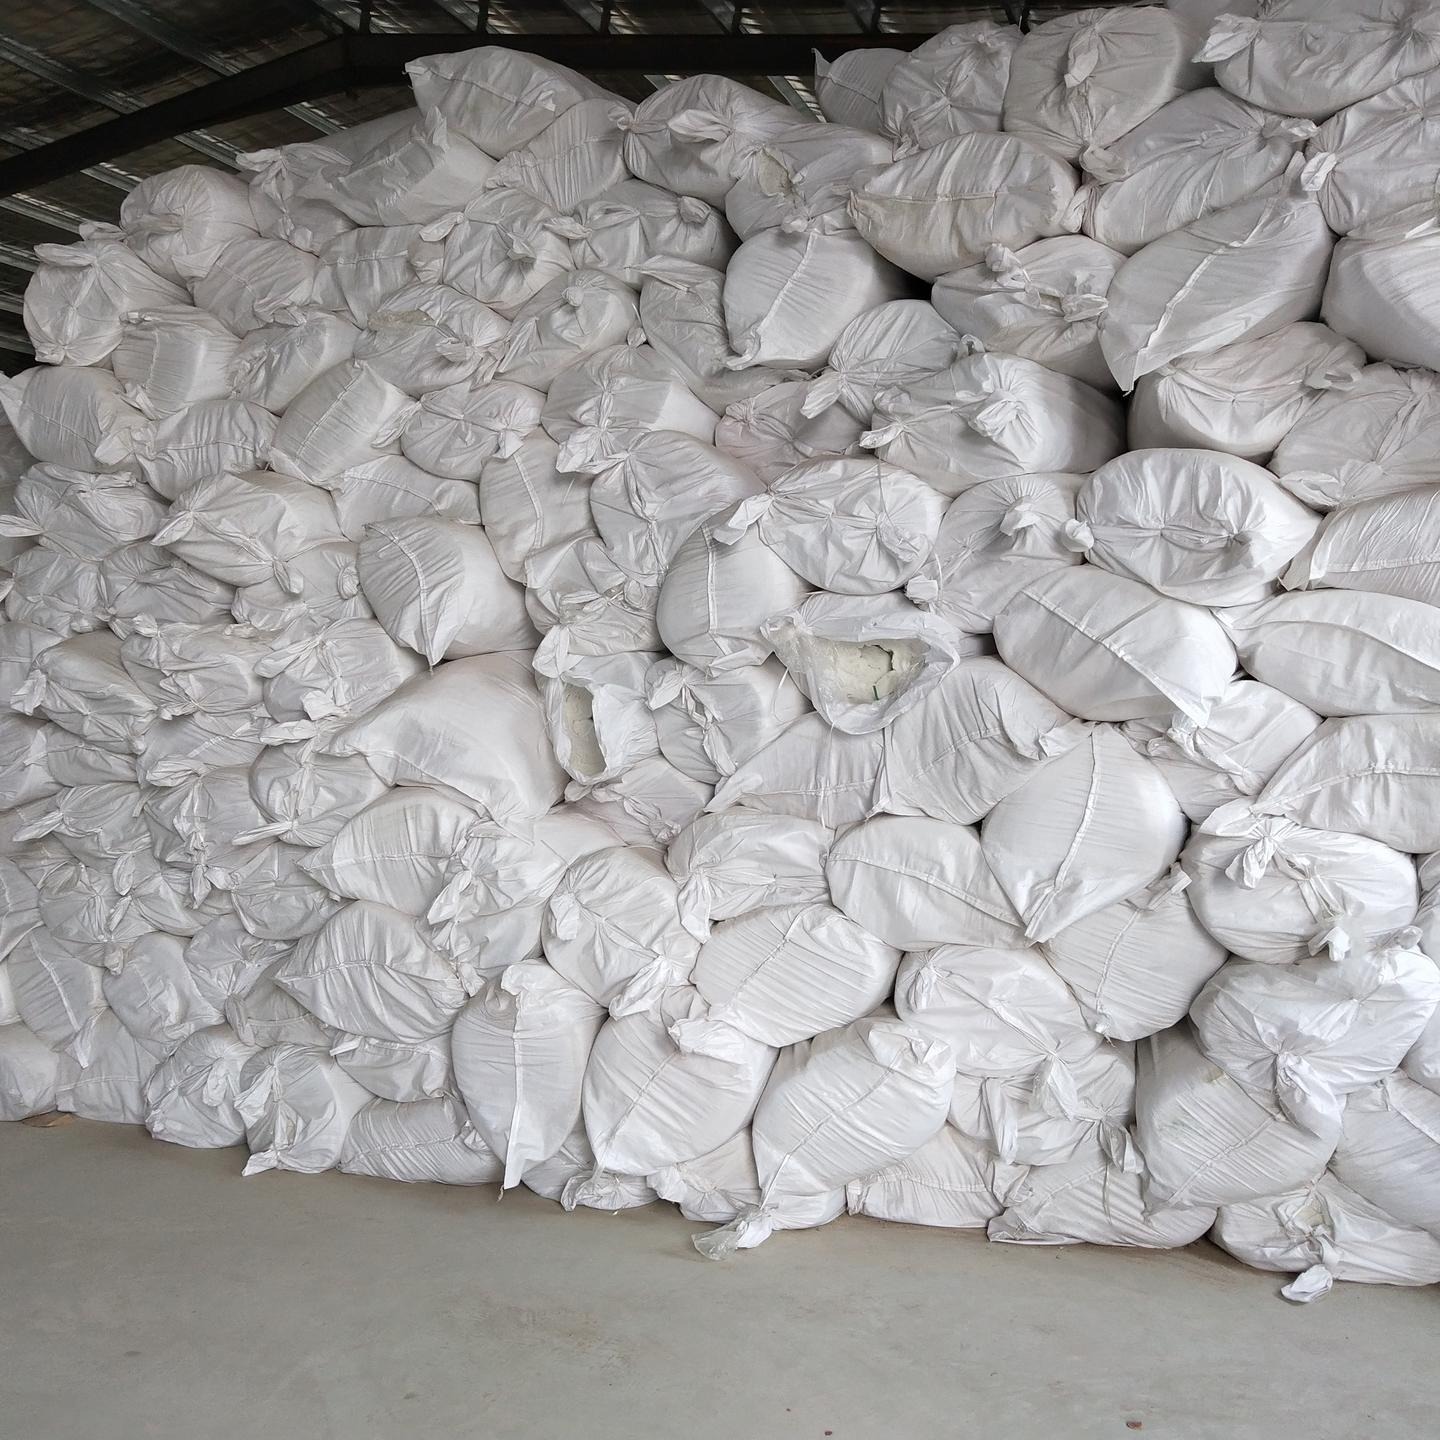 硅酸铝针刺毯常用尺寸 硅酸铝纤维毡新疆生产厂家 硅酸铝管壳乌鲁木齐定制价格